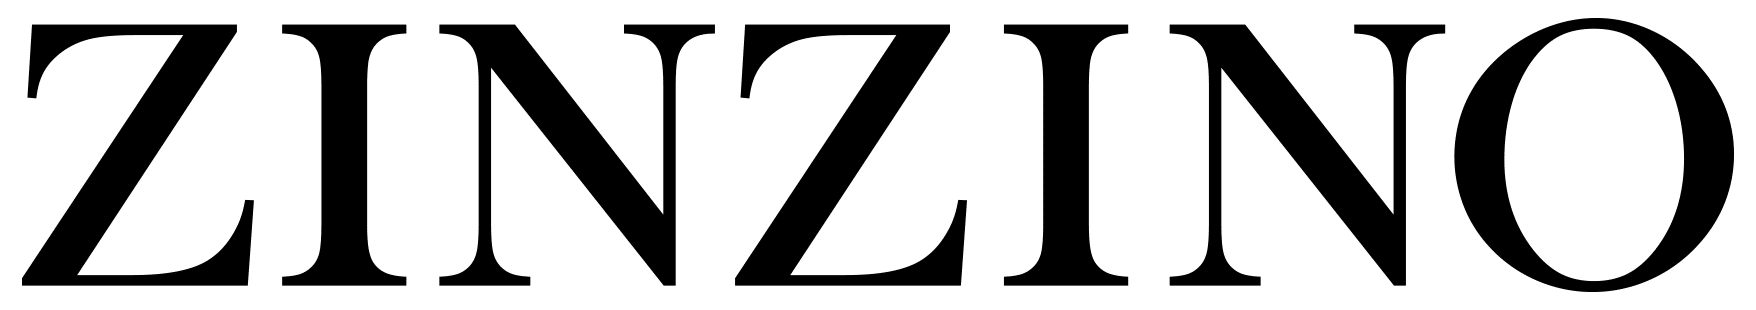 zinzino-textlogo-black-rgb-2019